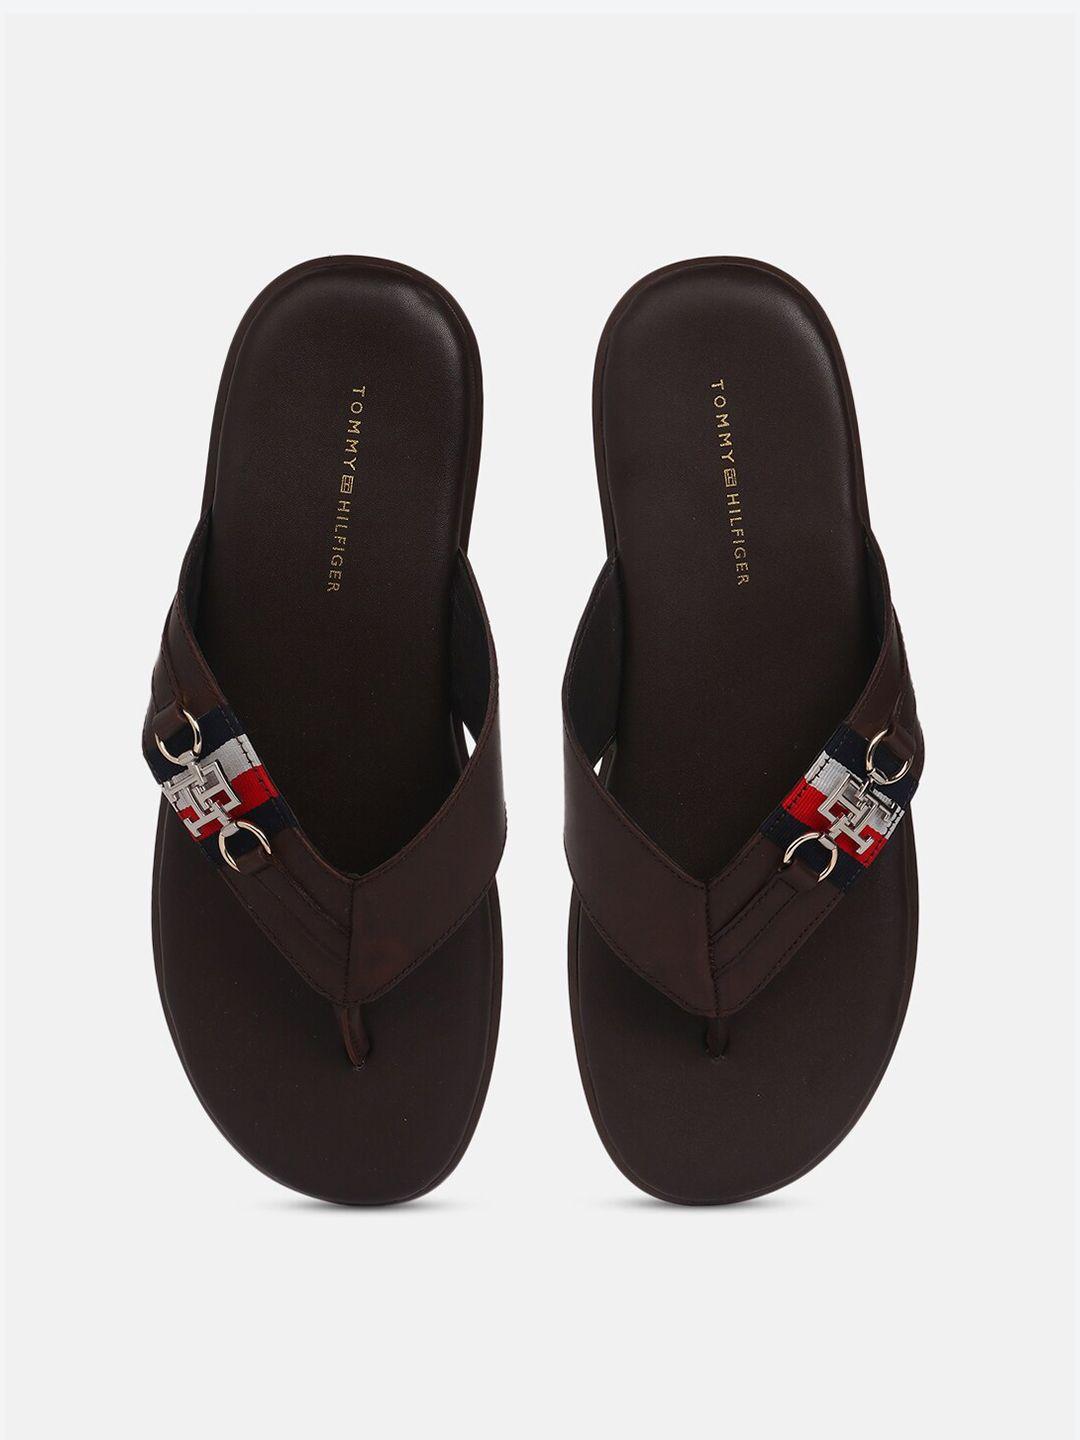 tommy-hilfiger-men-leather-comfort-sandals